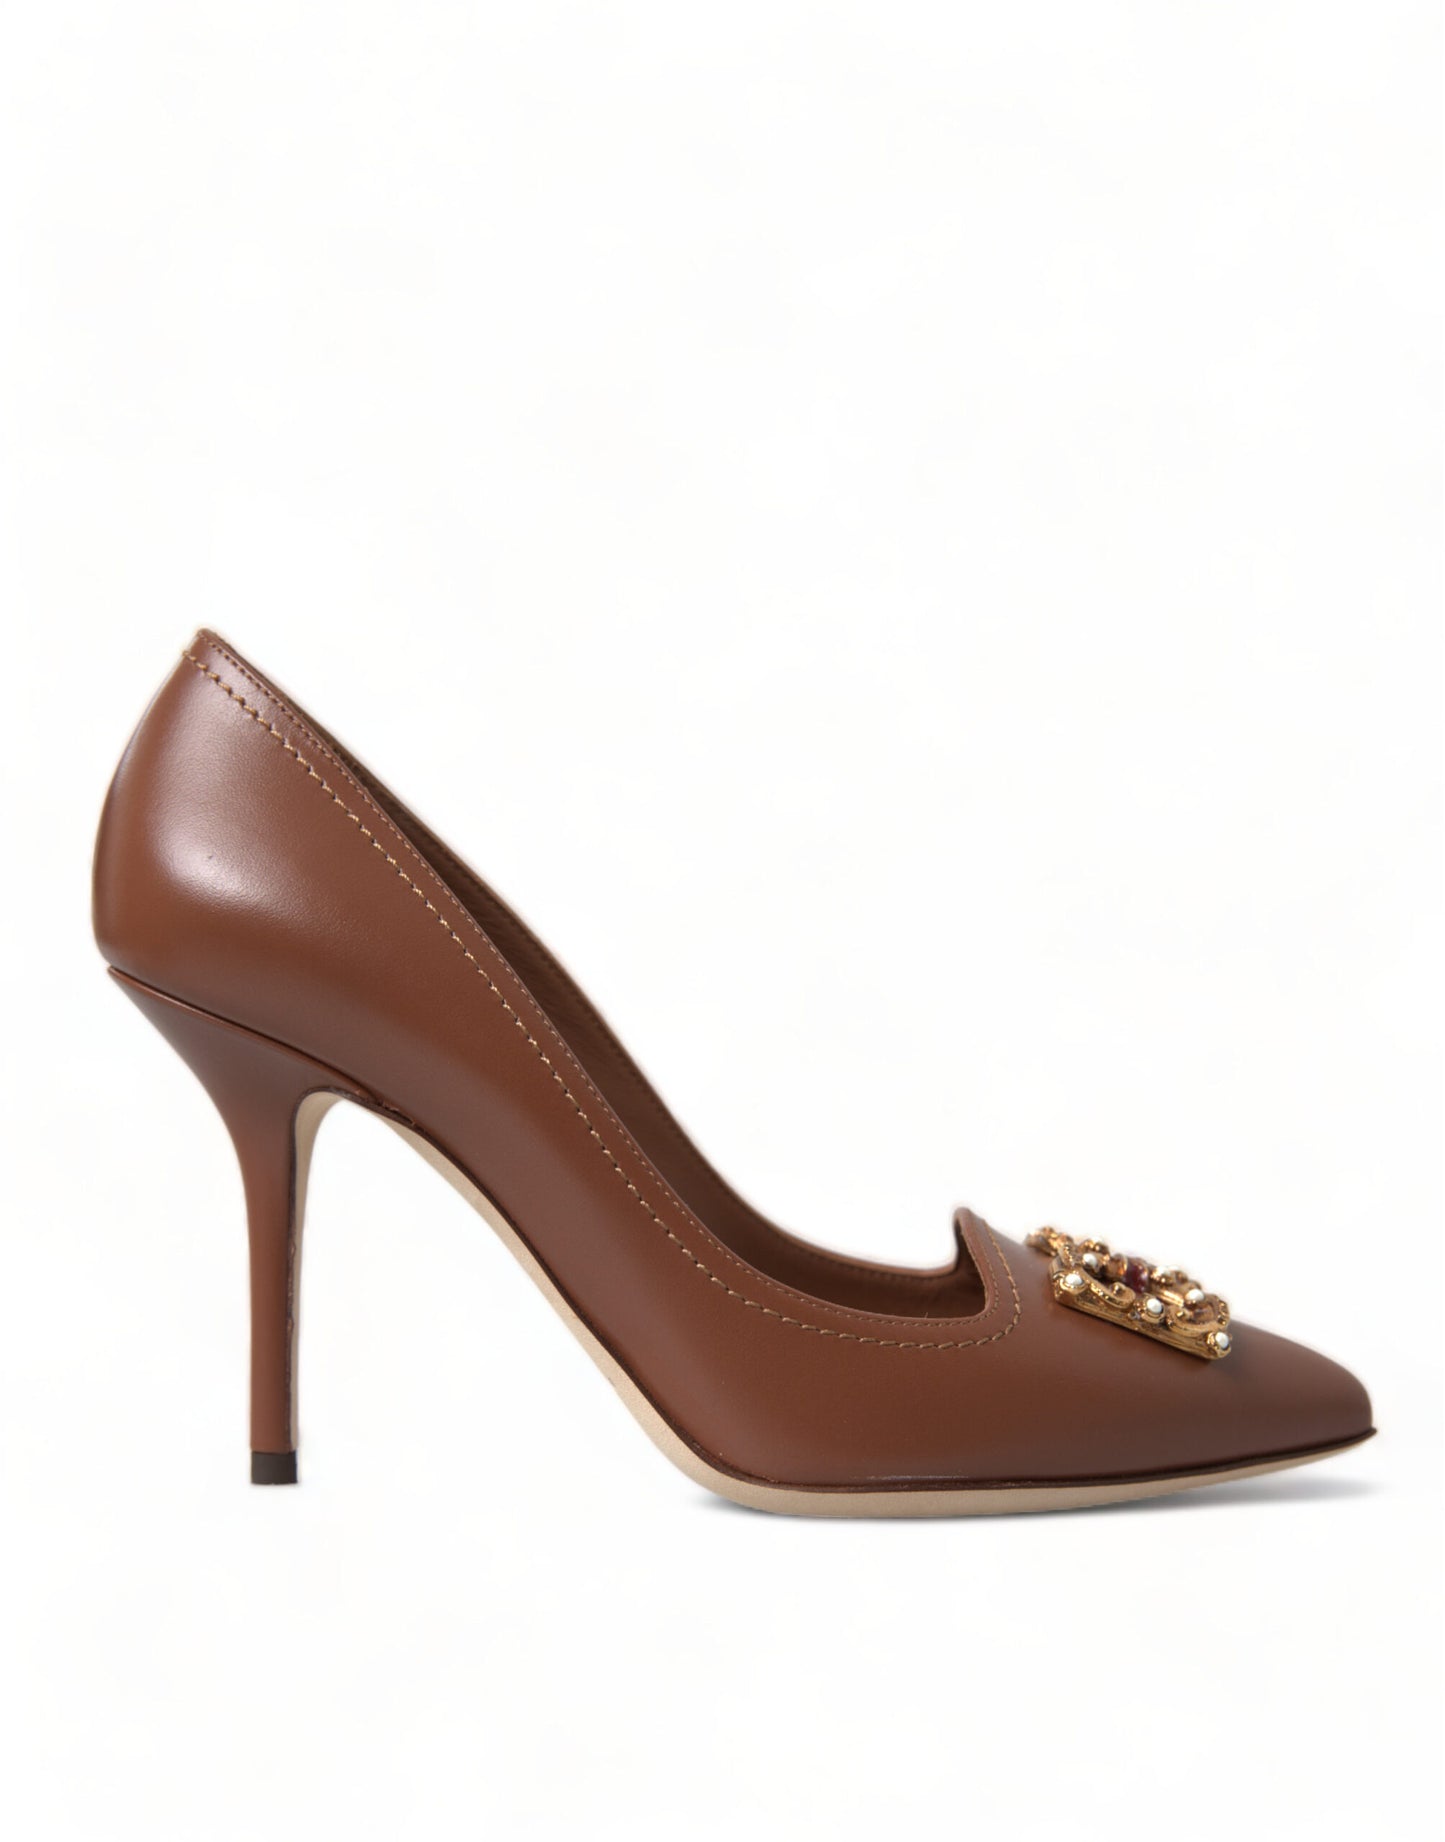 Elegant Brown Leather Heels Pumps